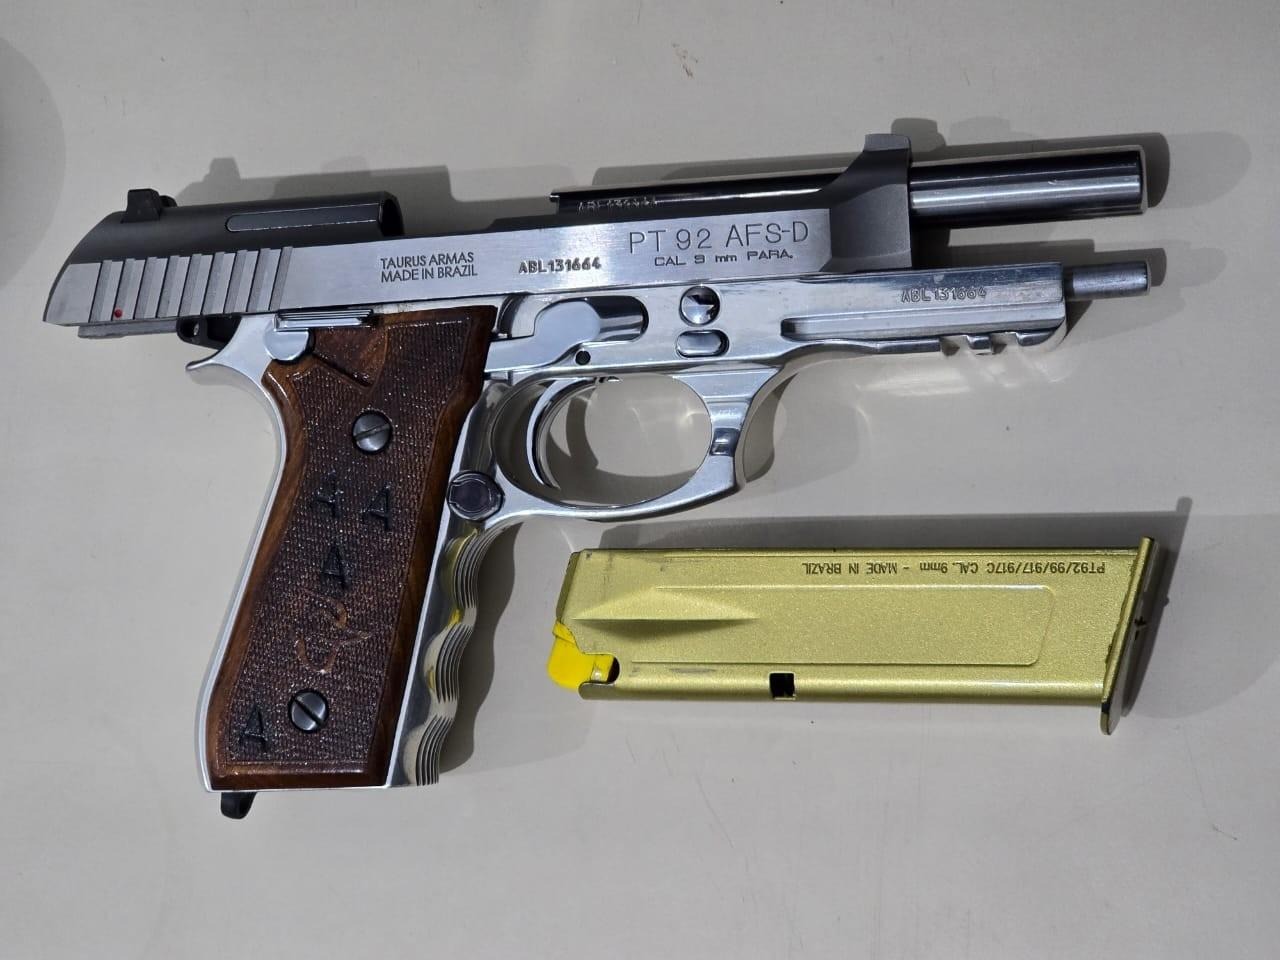 Arma usada na vinganca da boate - Foto Polícia Militar